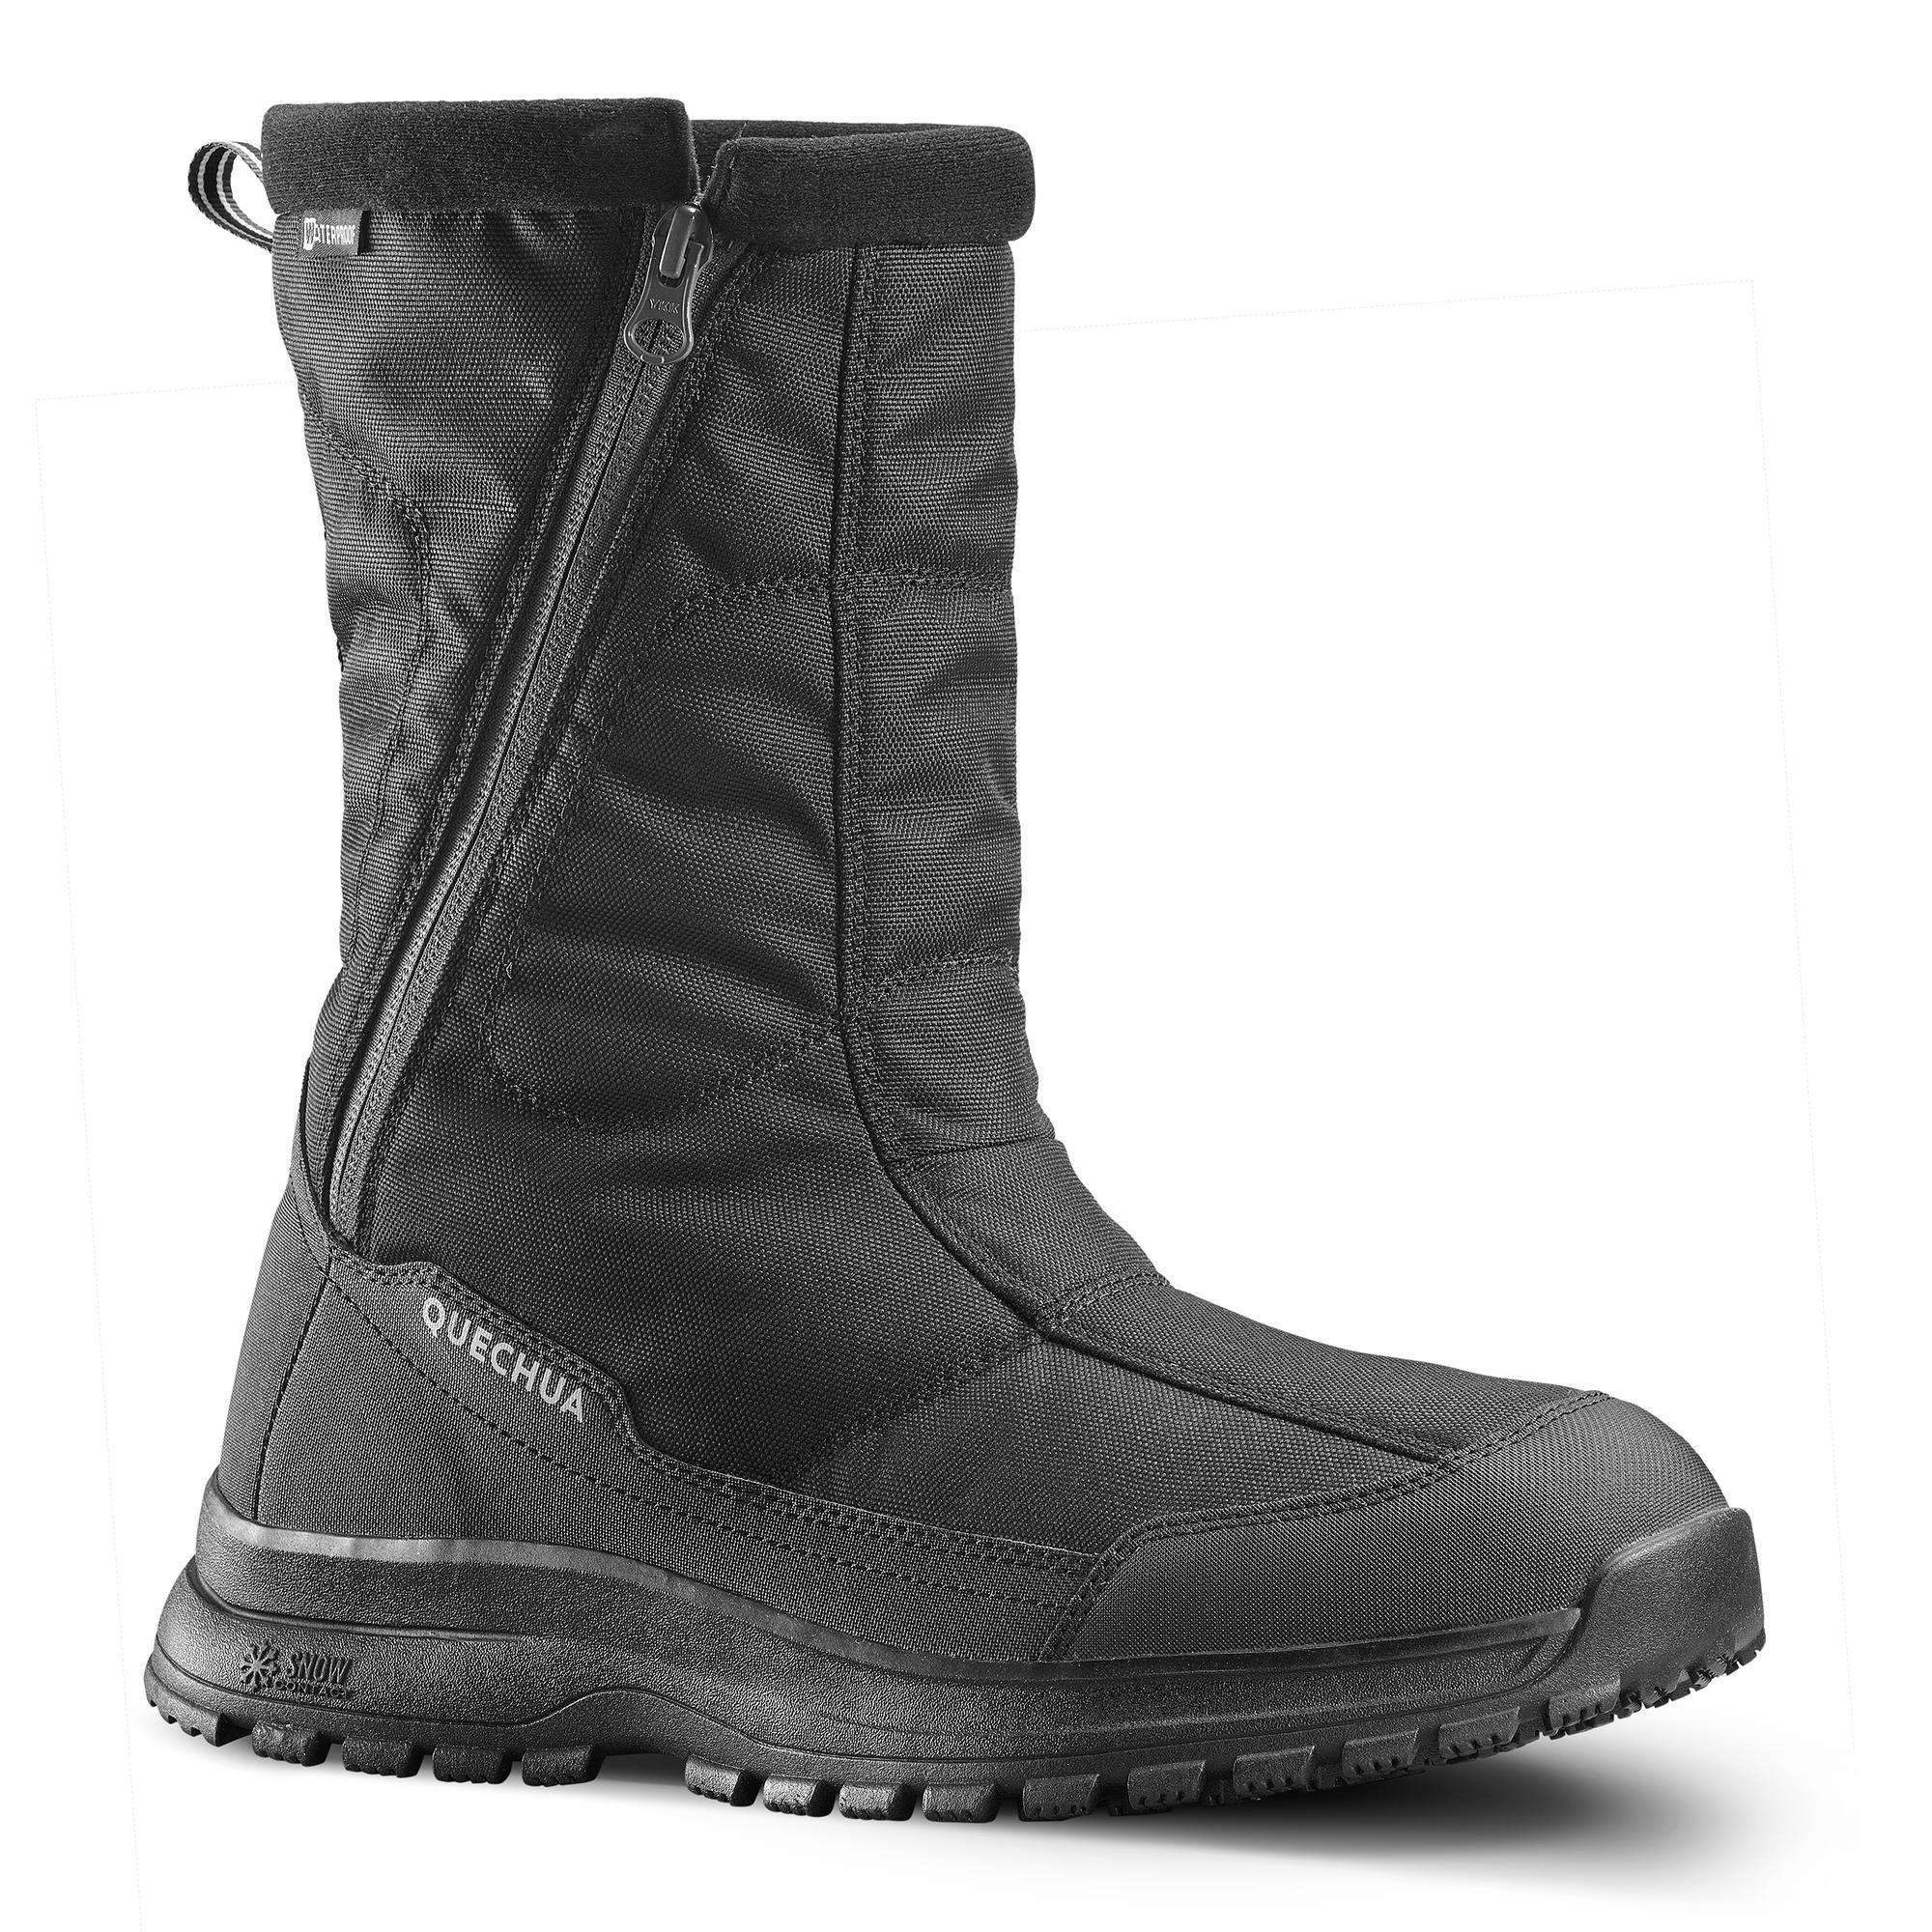 Теплые водонепроницаемые походные ботинки Decathlon — молния Sh100 Quechua, черный походные носки теплые высокие 2 пары зимние походные sh100 quechua цвет schwarz